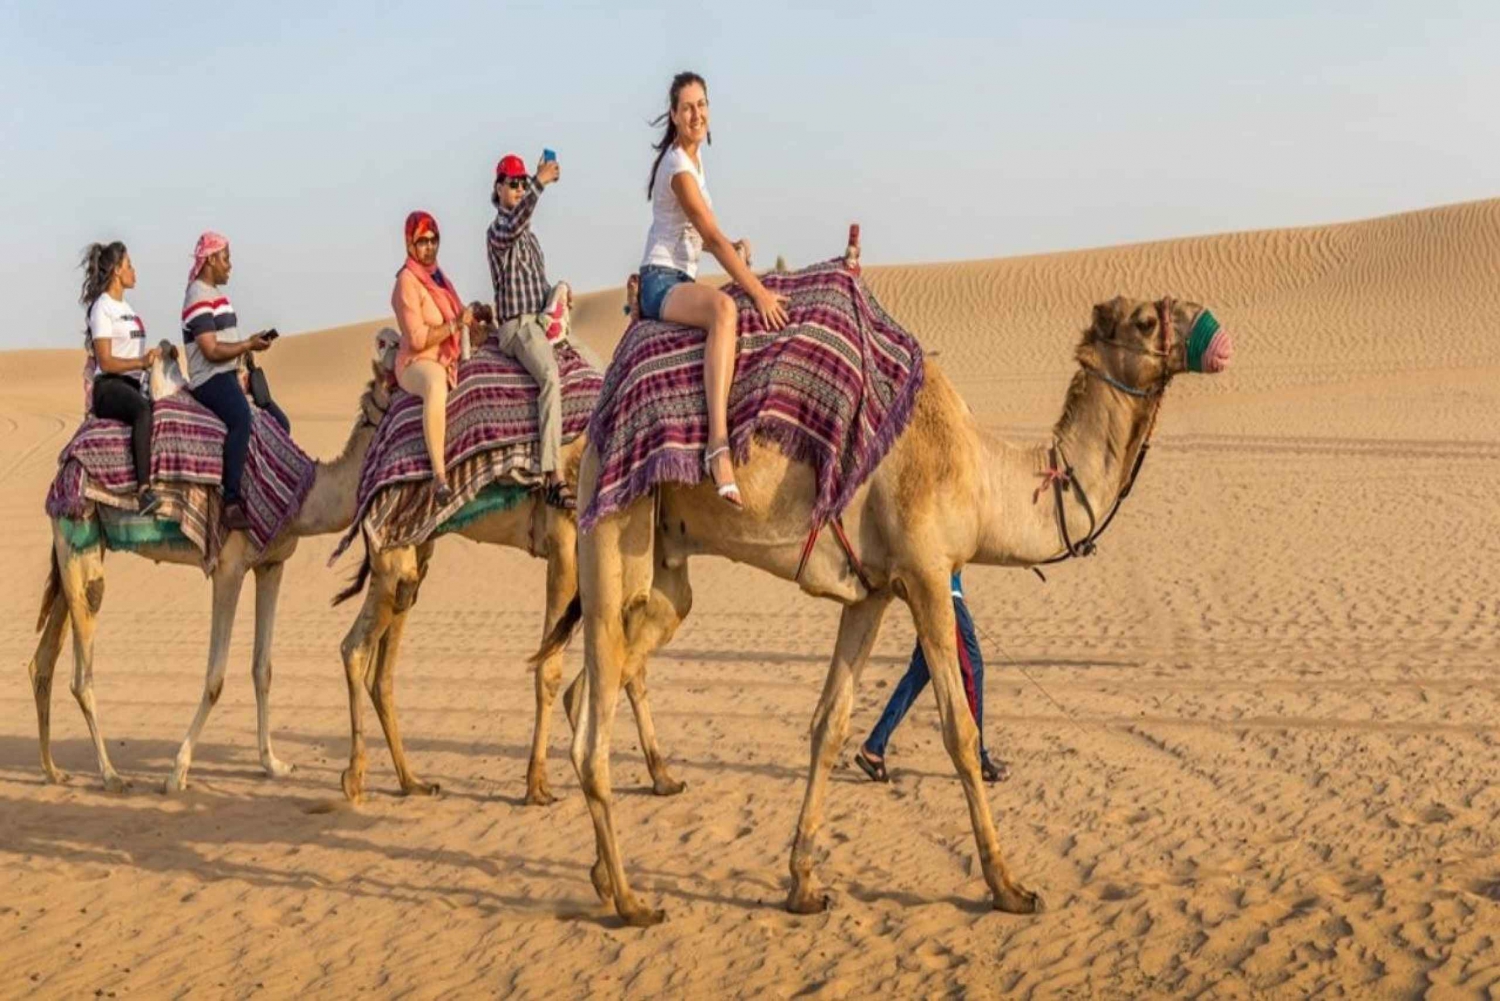 Dubai:Ökensafari, middag, shower, kamel- och sandboarding